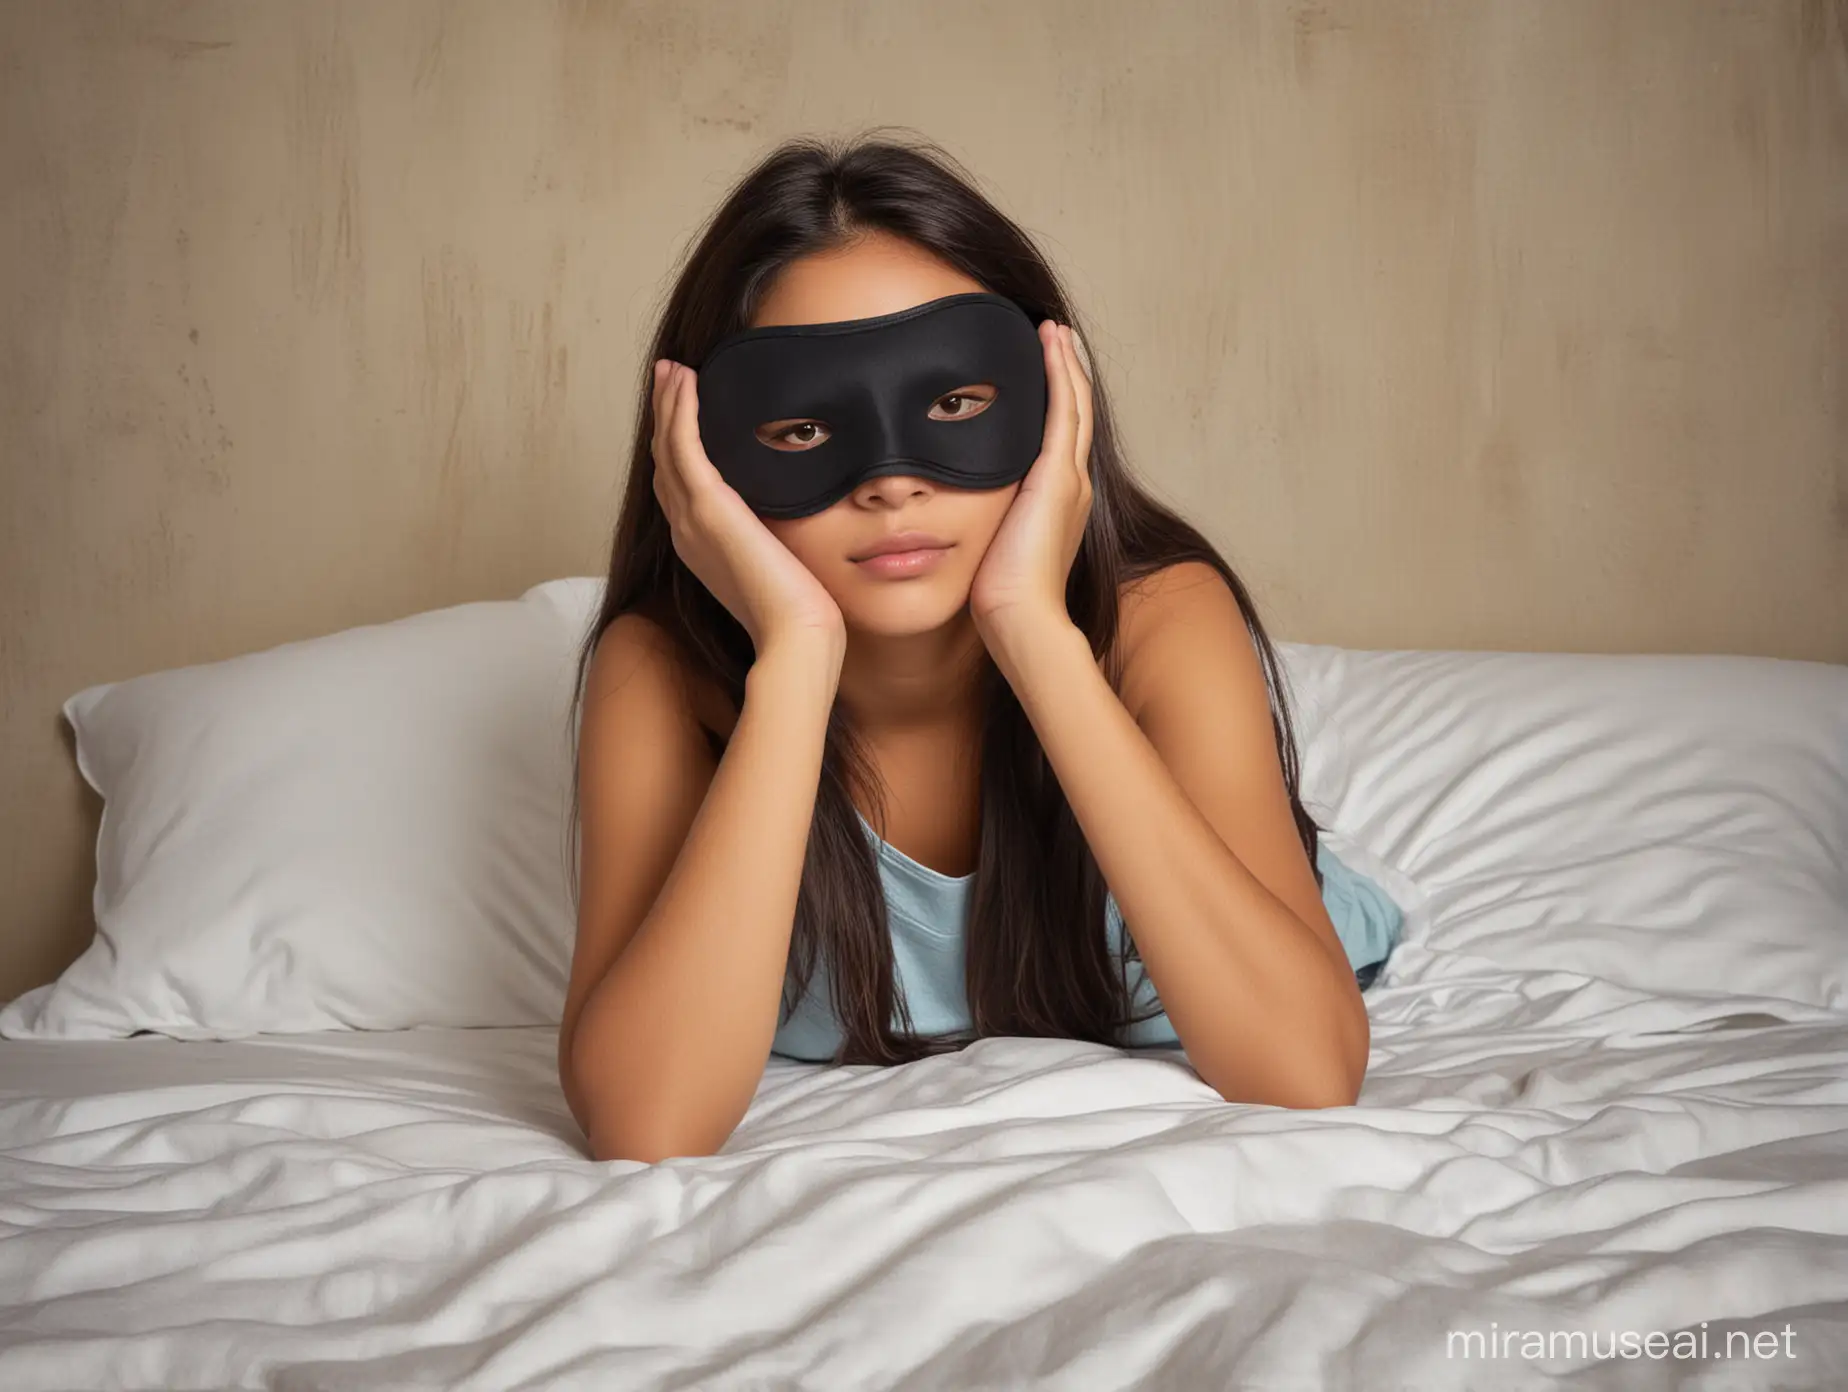 Melancholic Latina 17 years old with sleep mask over eyes